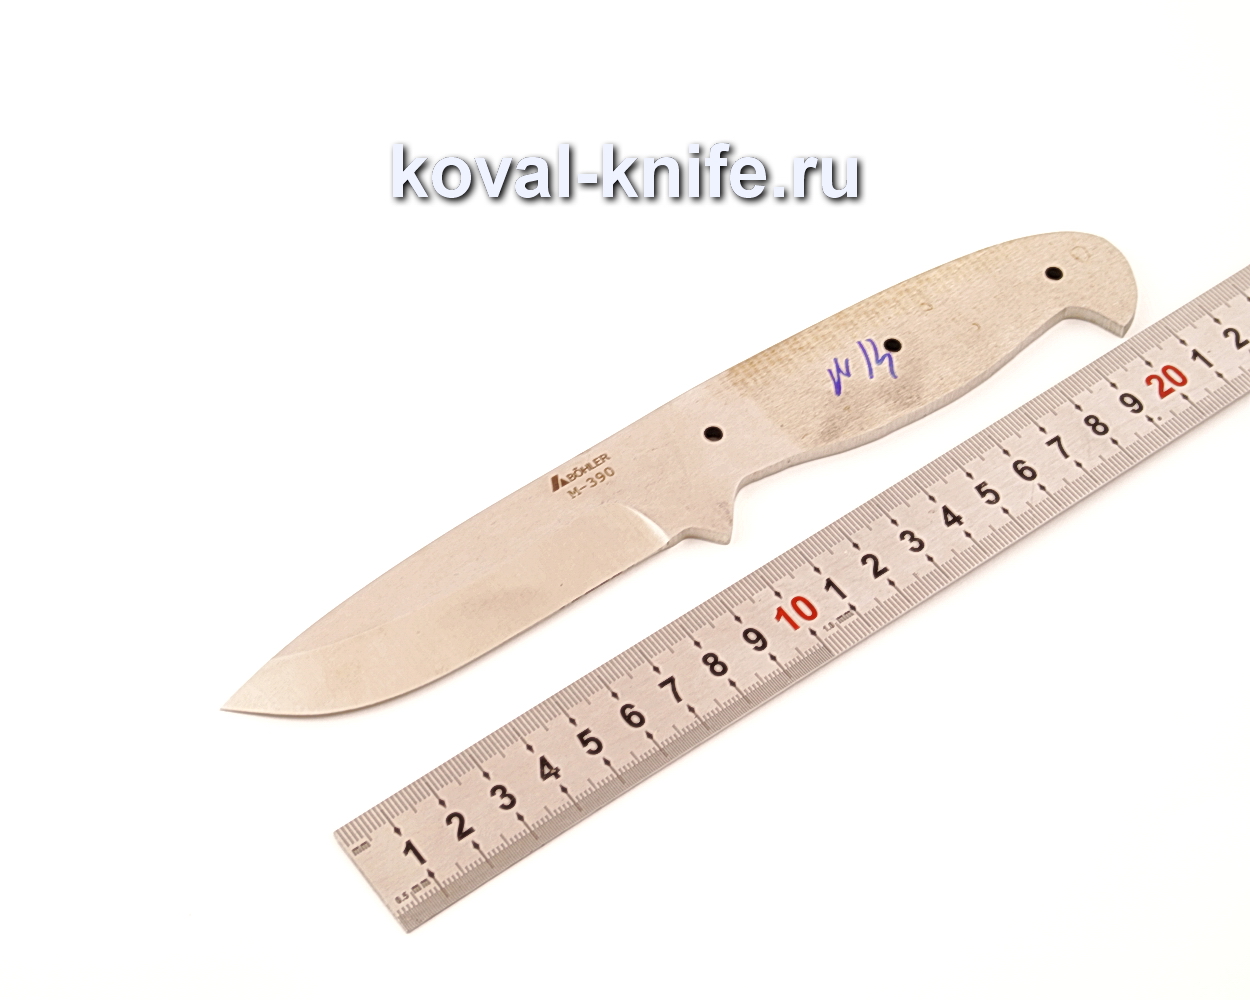 Клинок для ножа из порошковой стали Bohler M390 N14